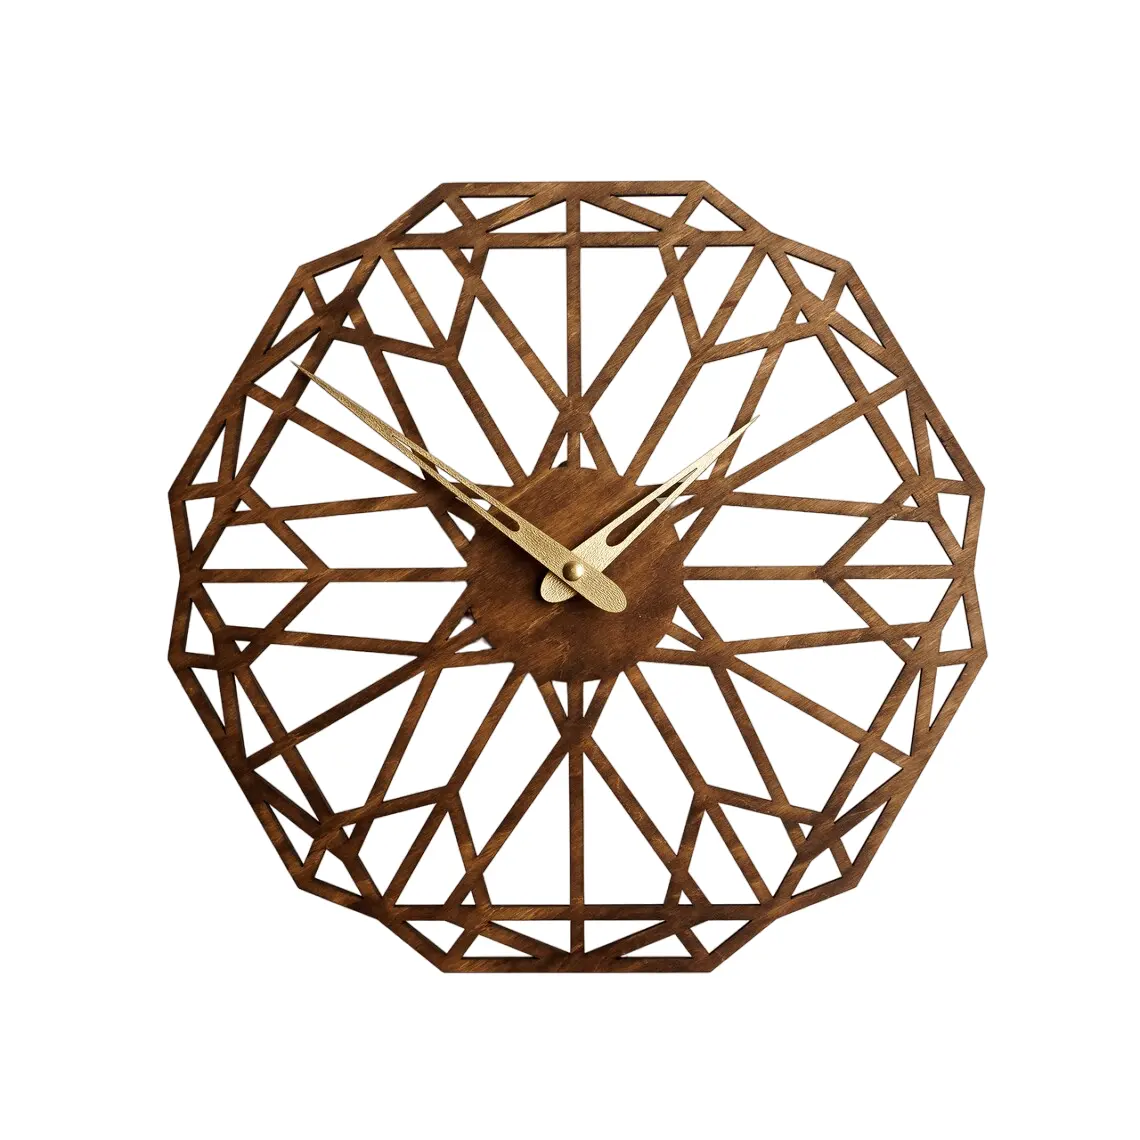 Reloj de pared de diseño geométrico de madera perfecto para mejorar cualquier tipo de pared de fondo Interior y aporta lujo a la decoración de su hogar